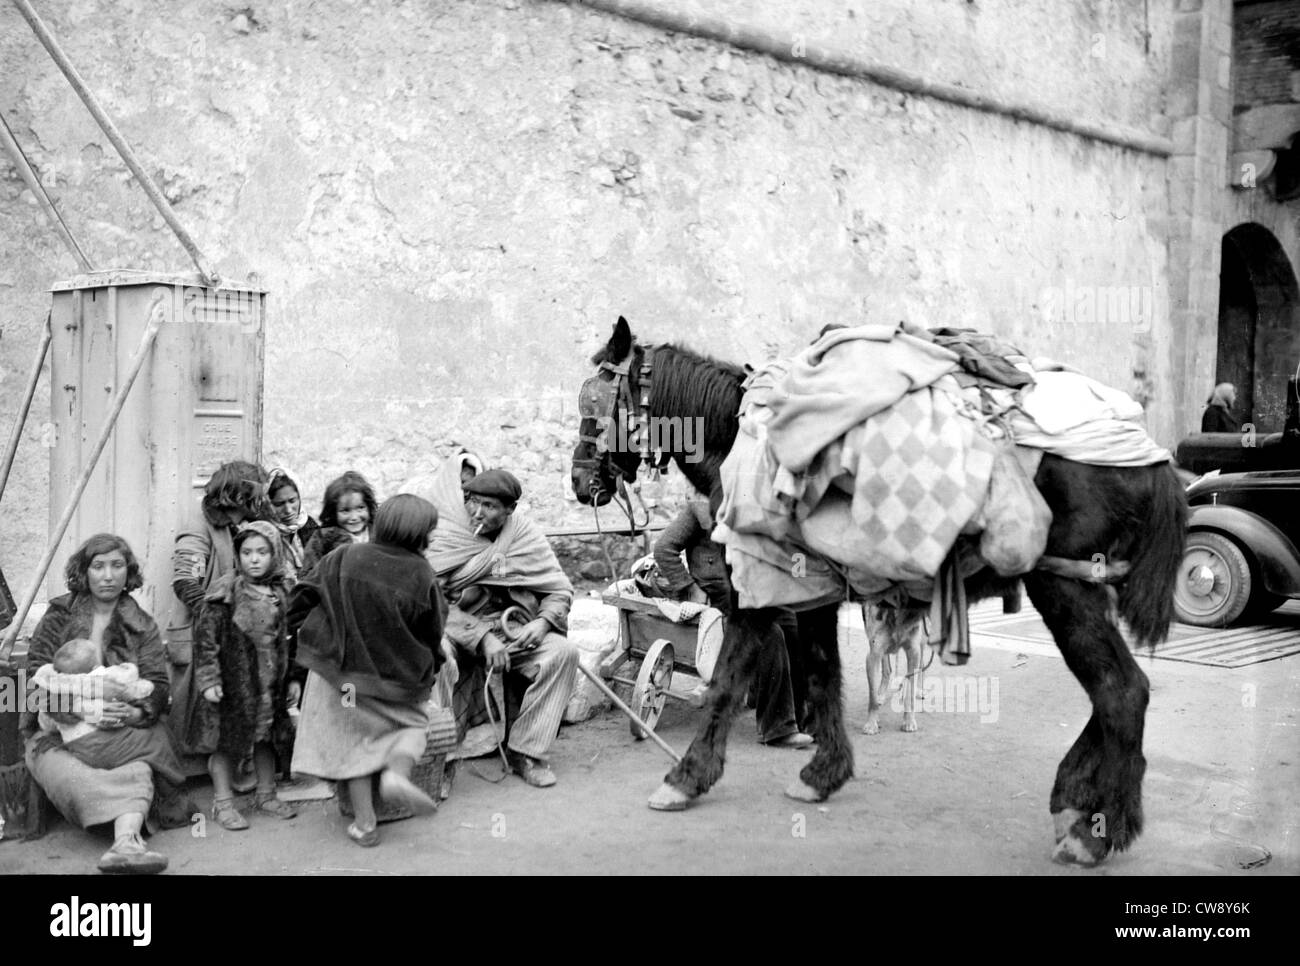 Spanish Refugees Spanish Civil War Stock Photos & Spanish Refugees ...